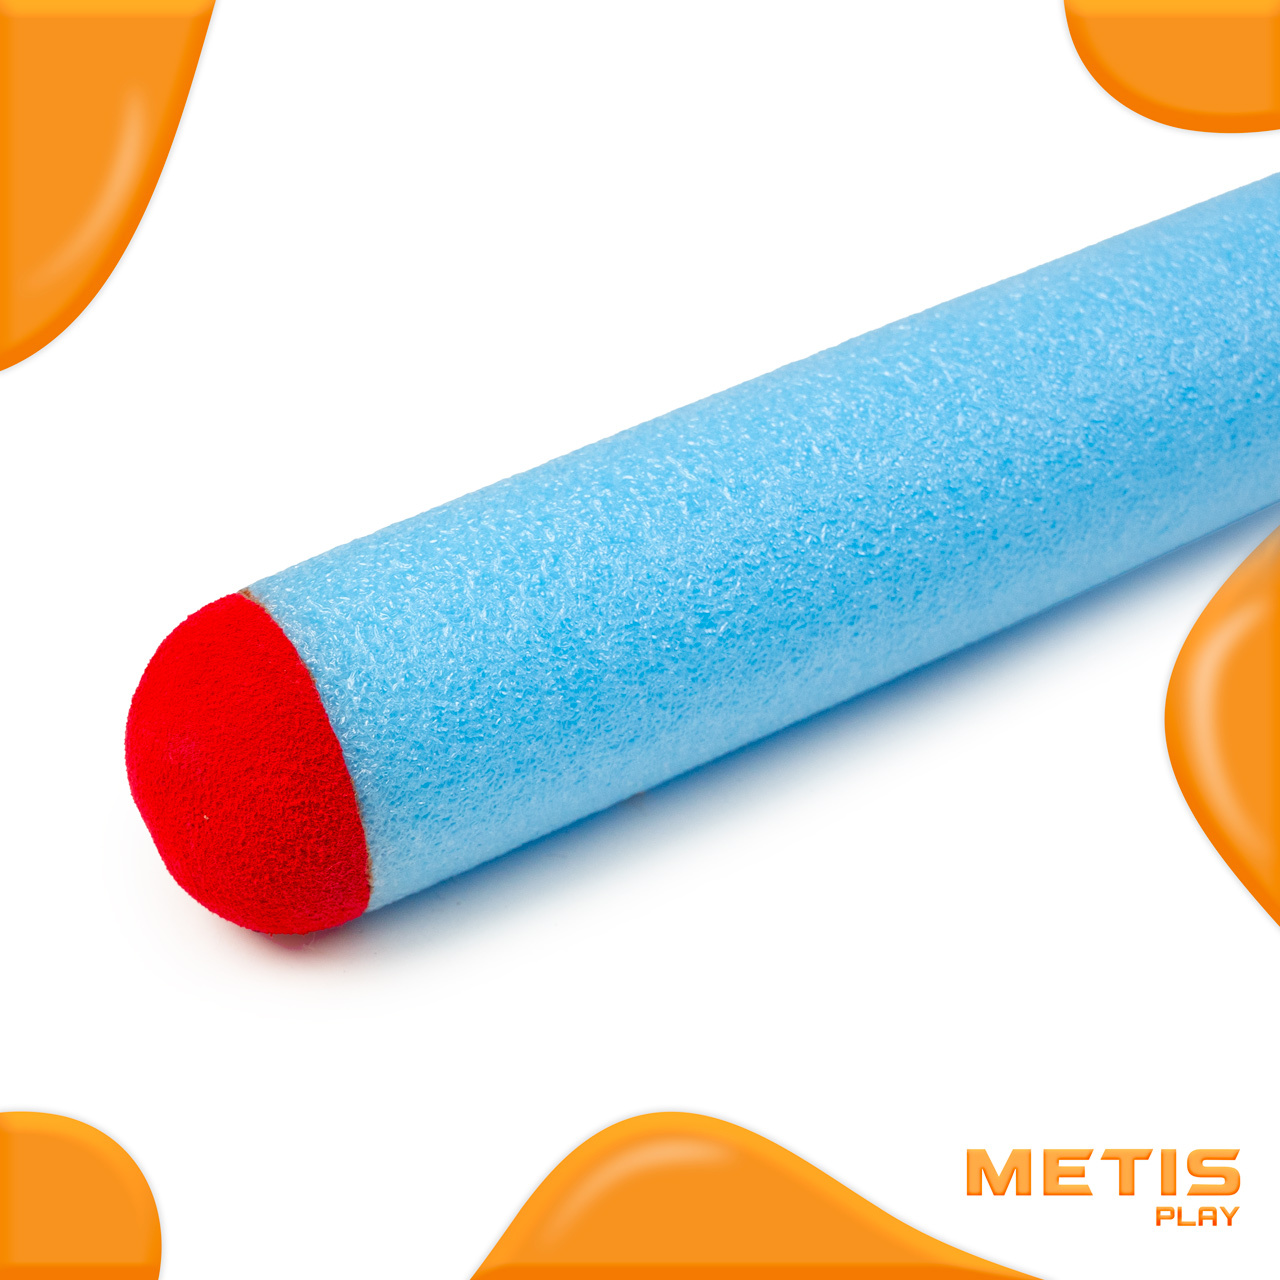 METIS Play Foam Javelins [45cm/85cm] [Size:: 45cm Javelin]